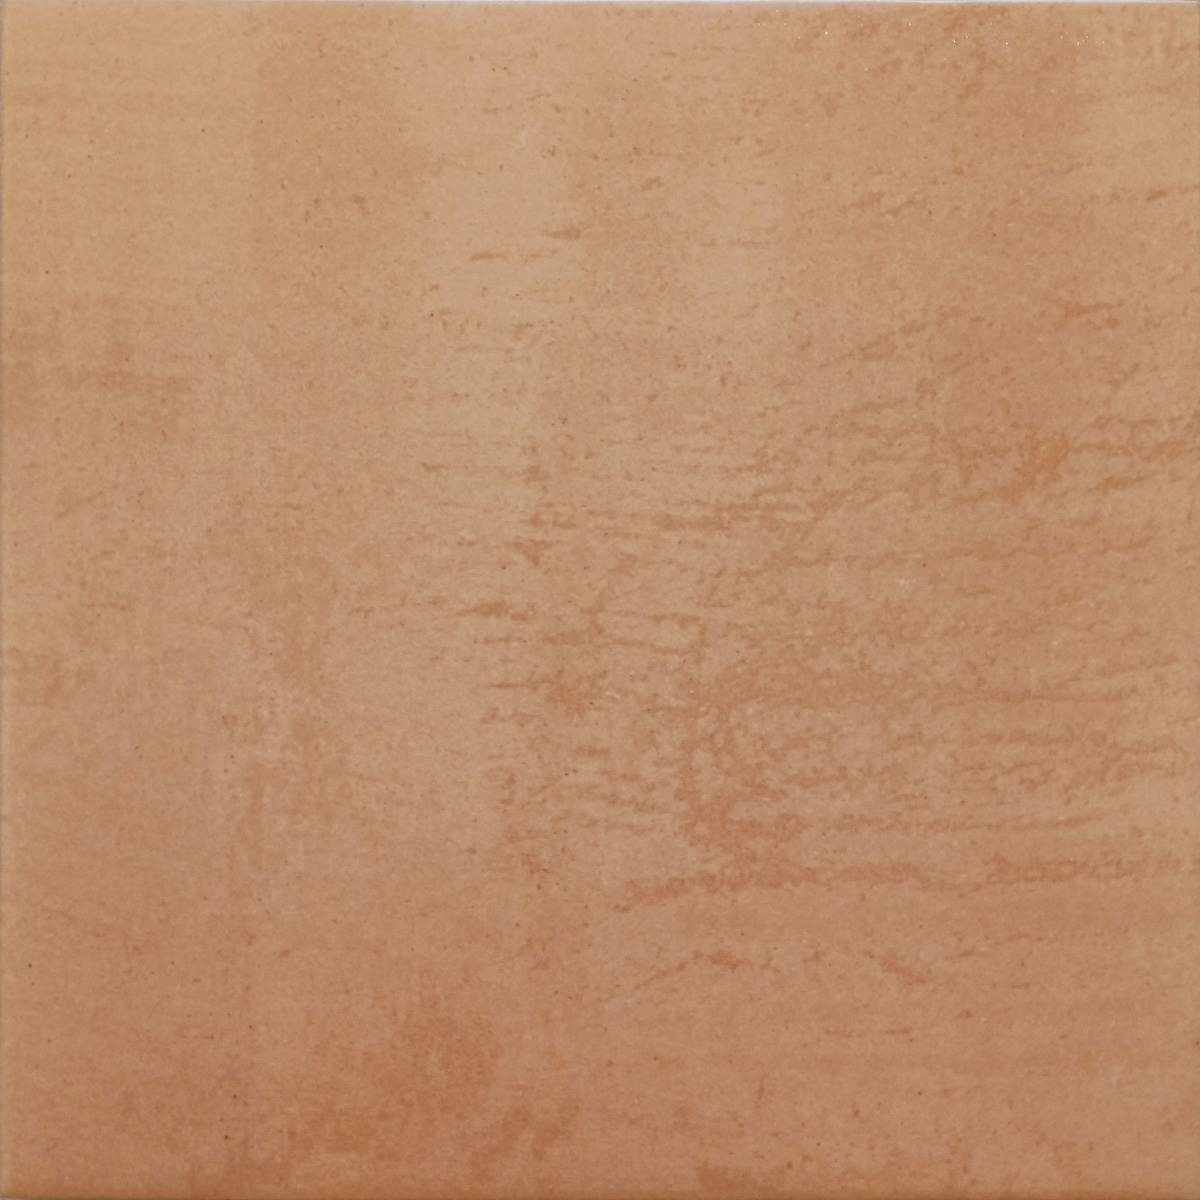 Jabo Tegelsample:  Beton Cire Bercy Terra vloertegel bruin 22x22cm